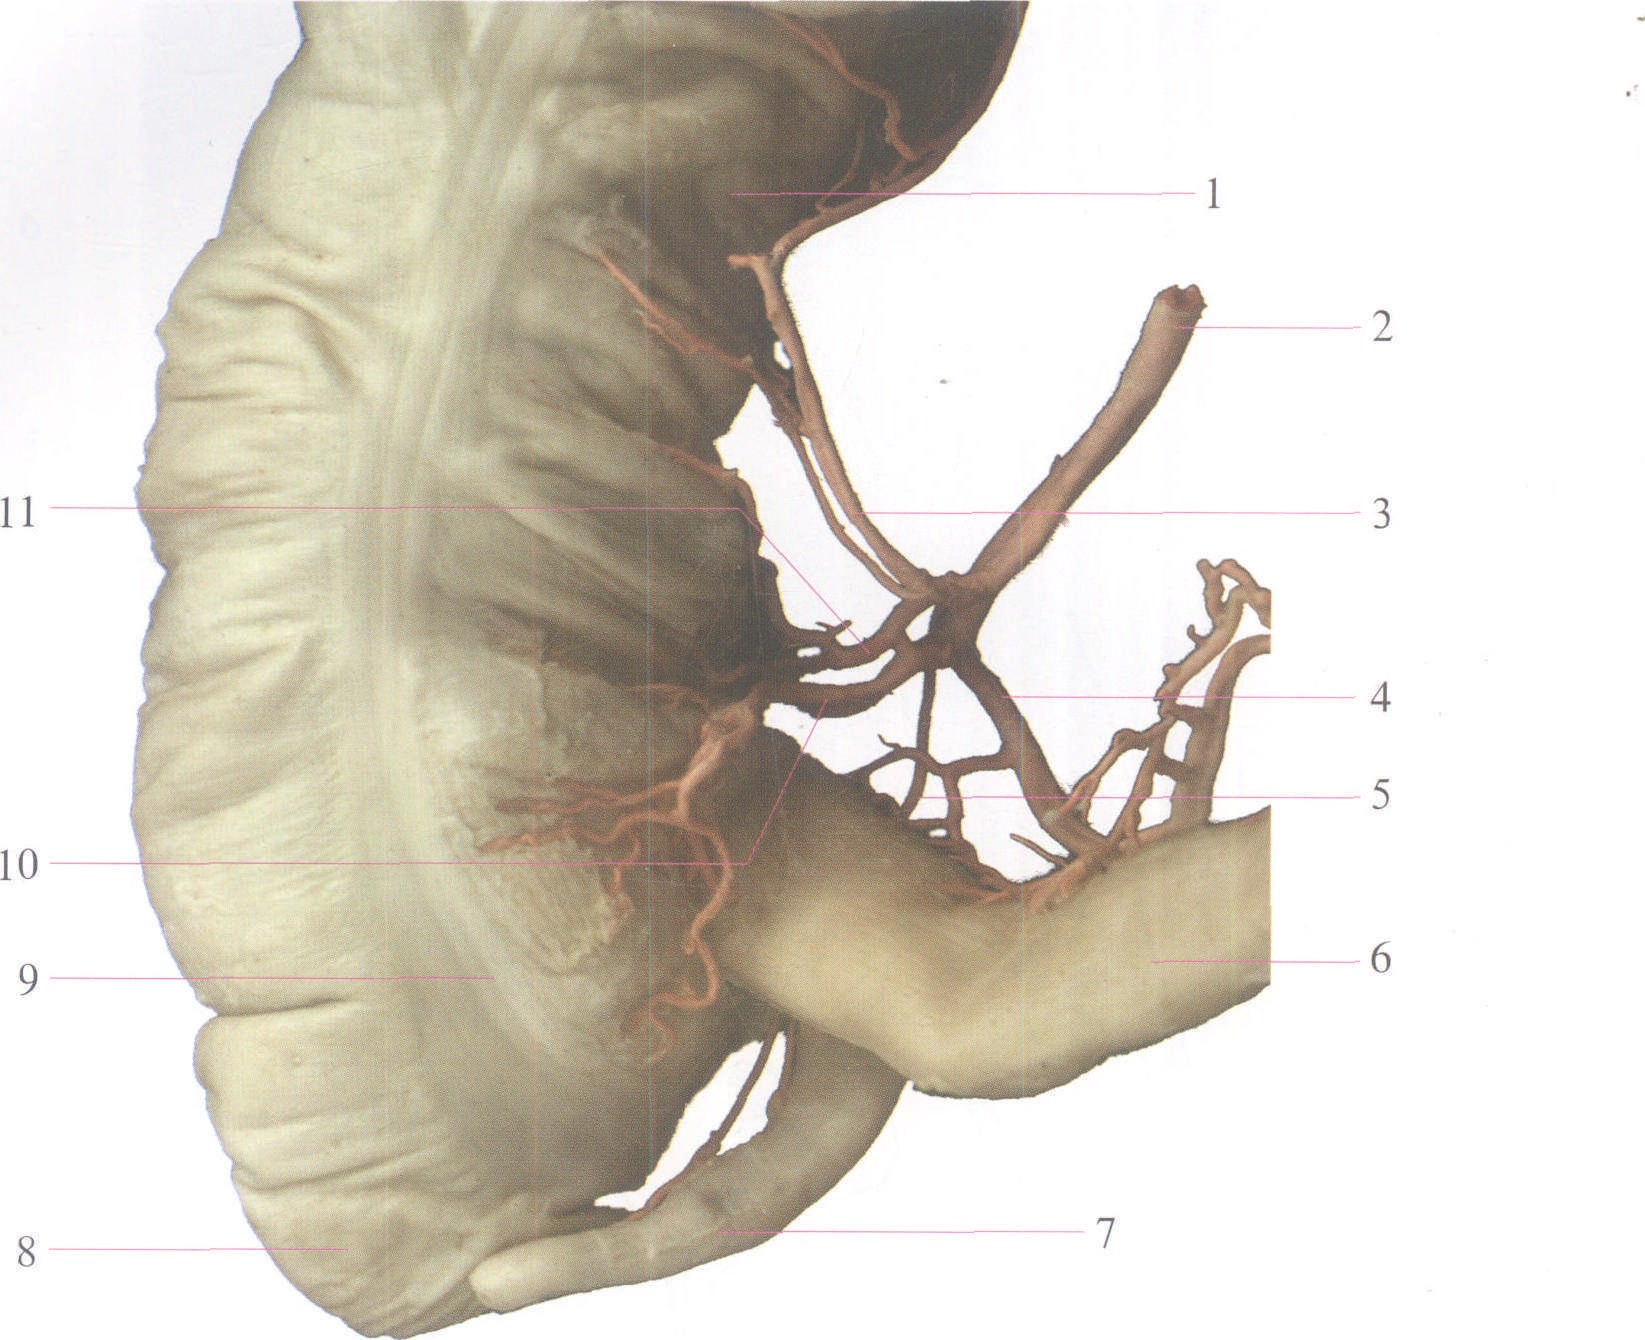 337 髂外动脉和髂内动脉的分支模式图-人体解剖学-医学